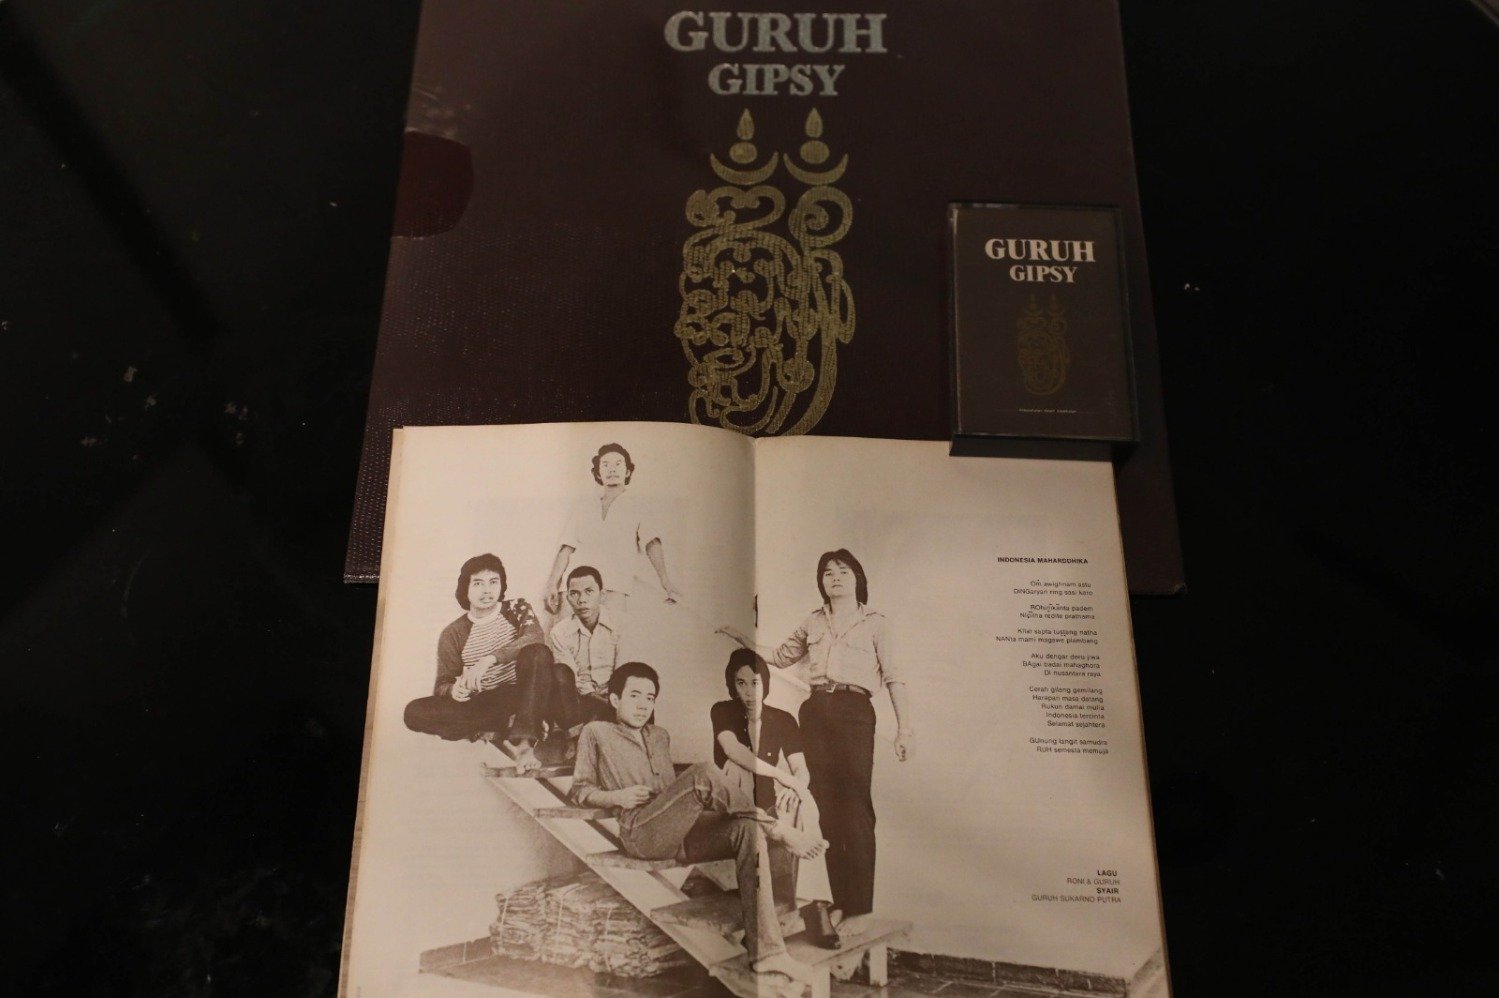 Koleksi album Guruh Gipsy milik Jay Subyakto yang akan dipamerkan dalam ekshibisi No Music, Noise! di Matawaktu (sumber gambar